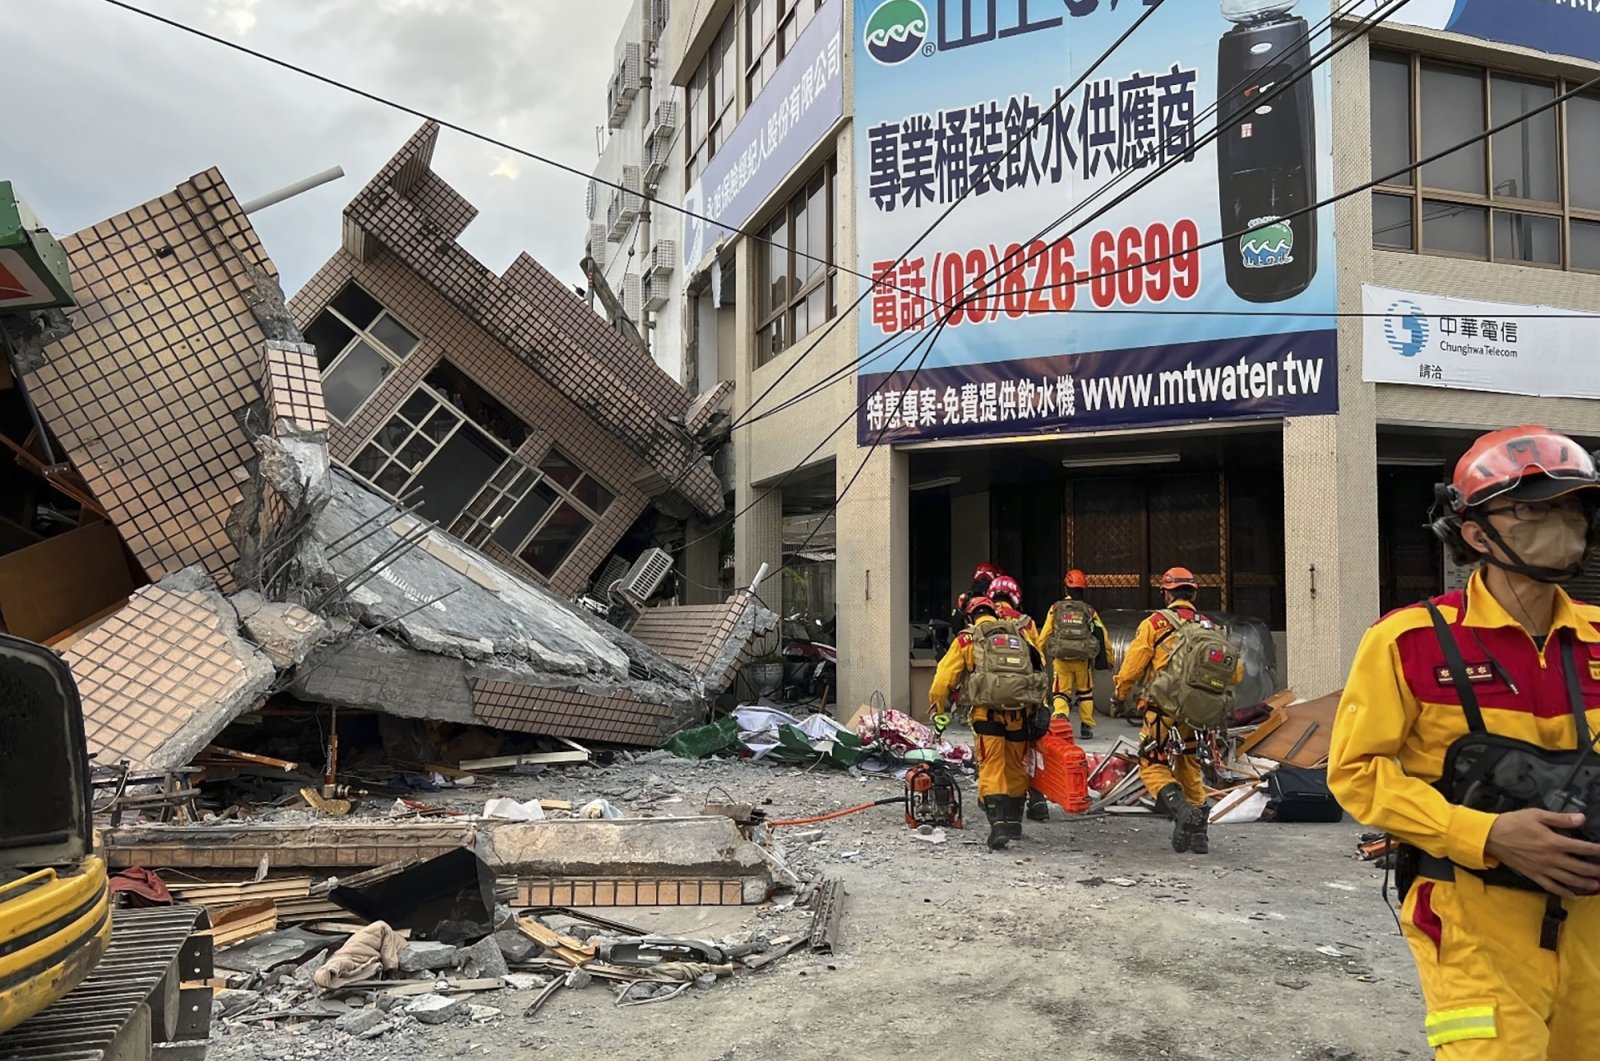 Gempa kuat ke-2 melanda Taiwan selatan, bangunan runtuh